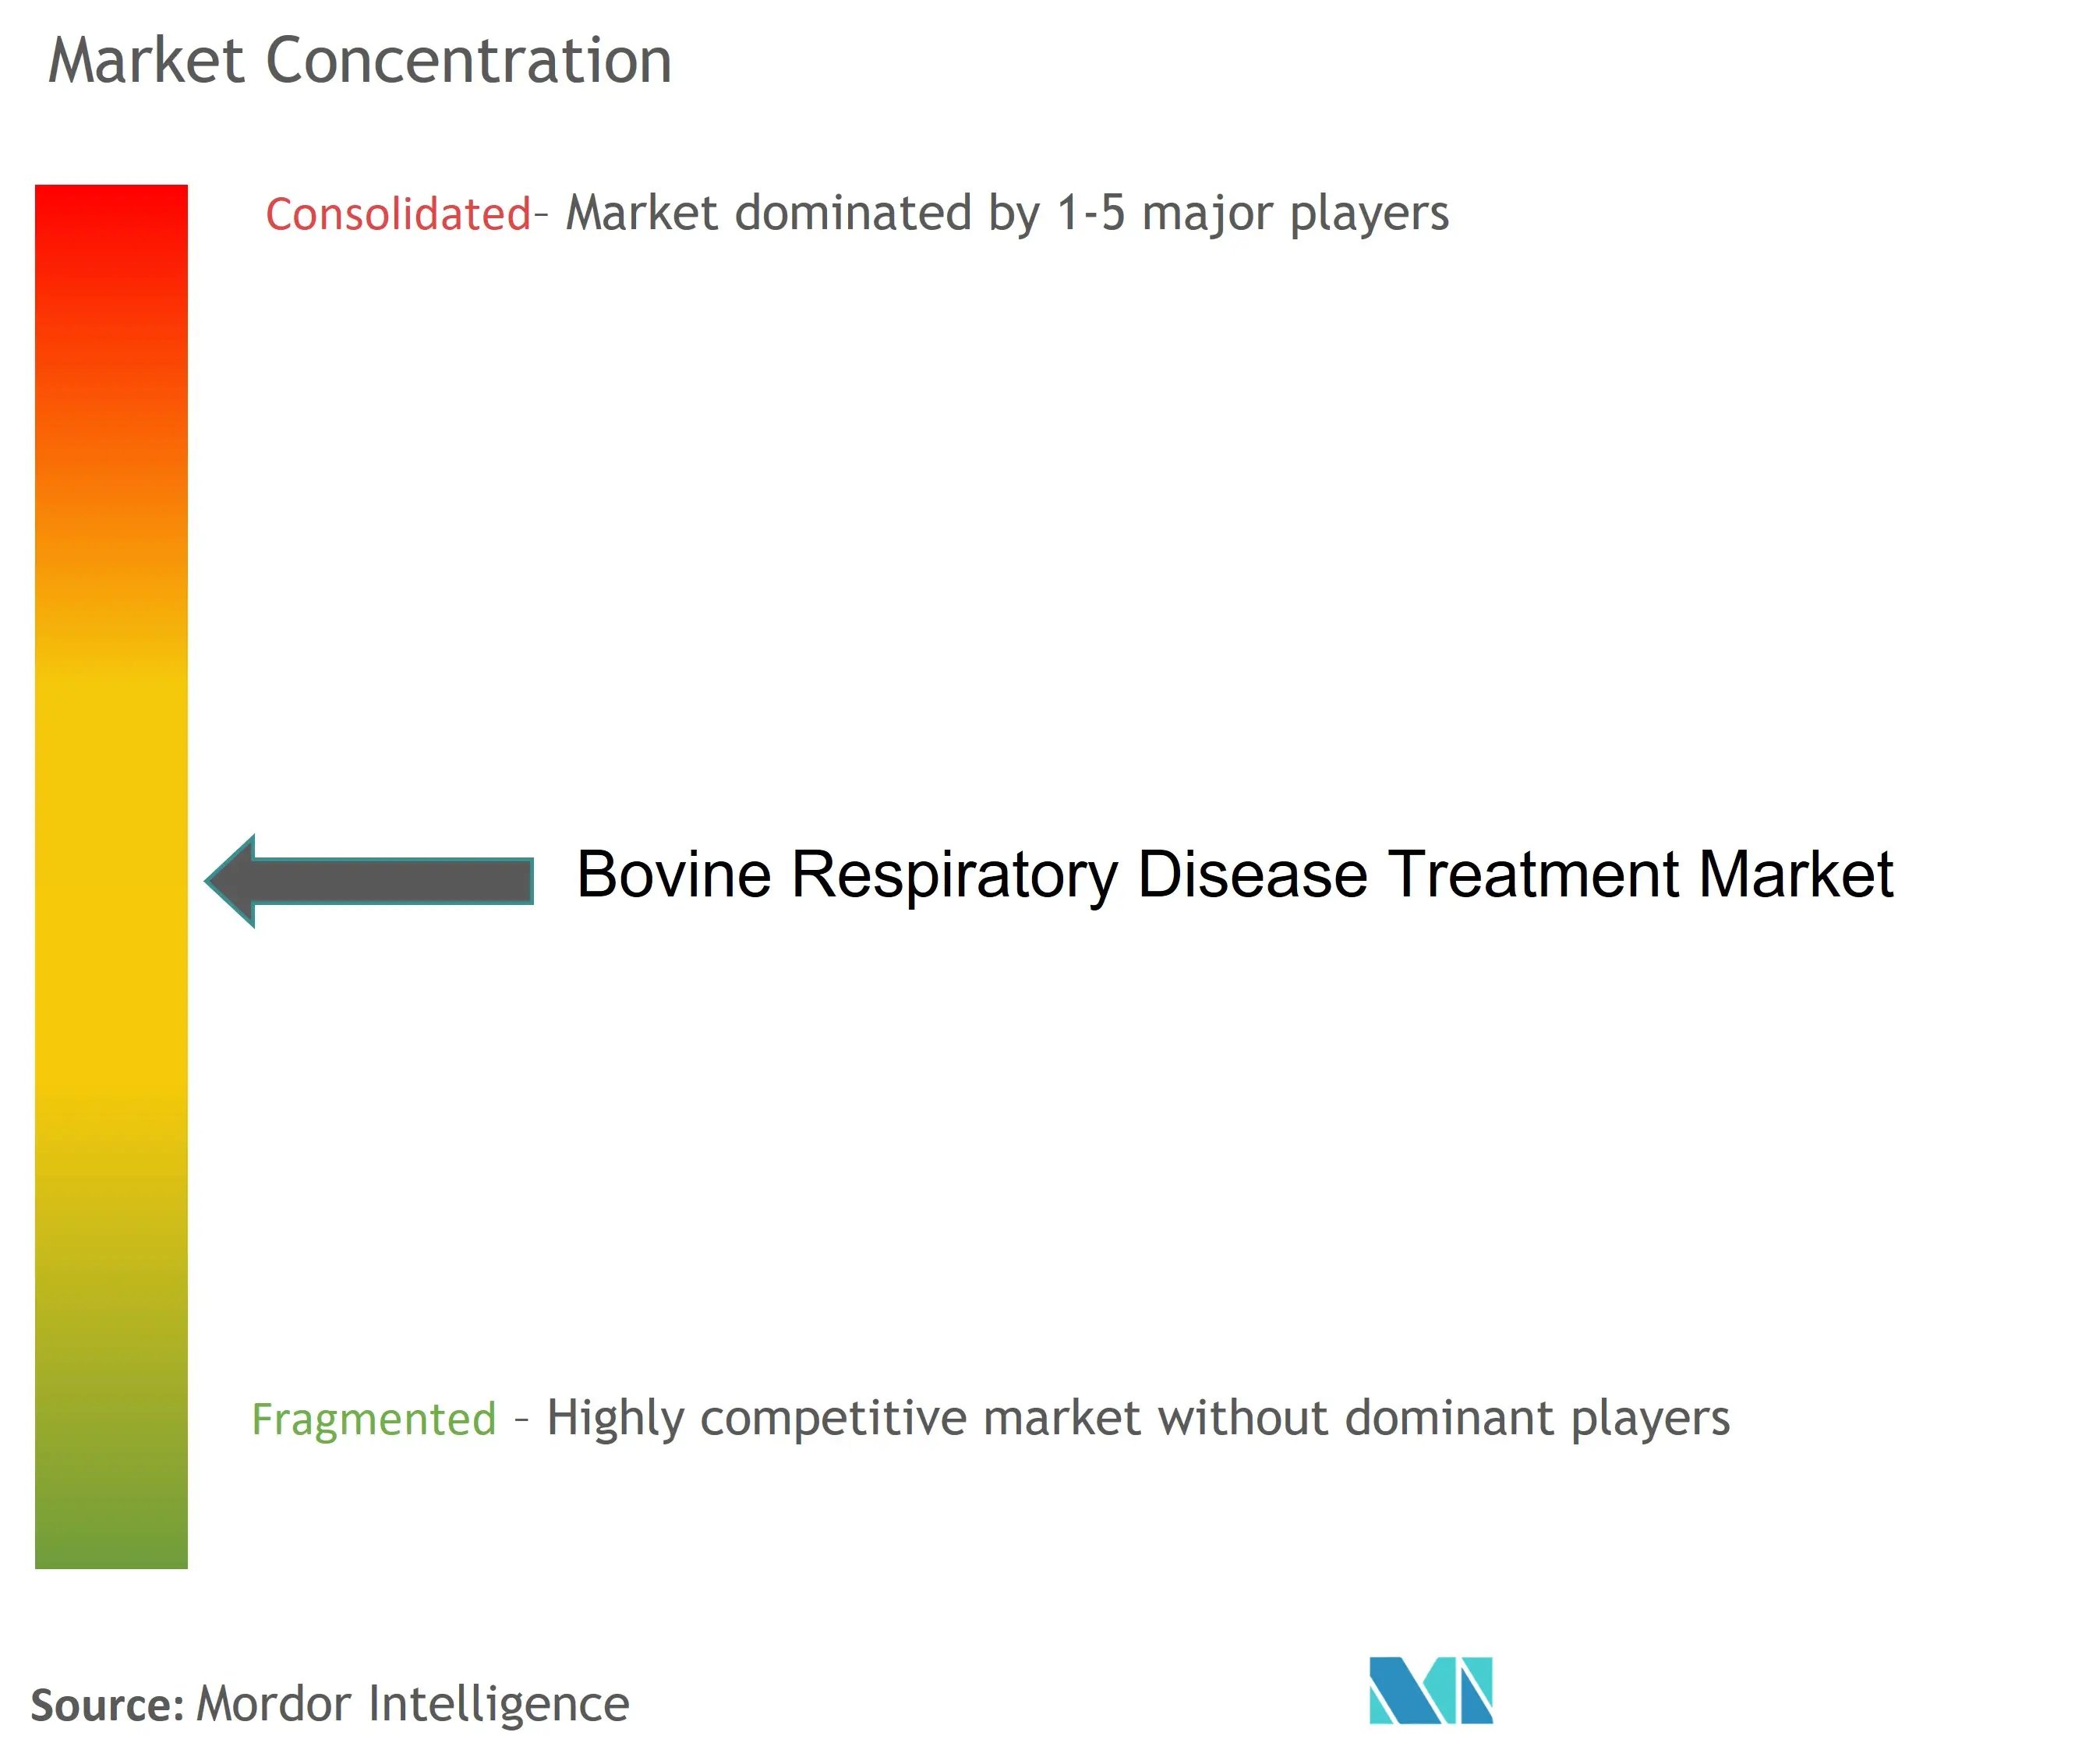 Concentración del mercado de tratamiento de enfermedades respiratorias bovinas